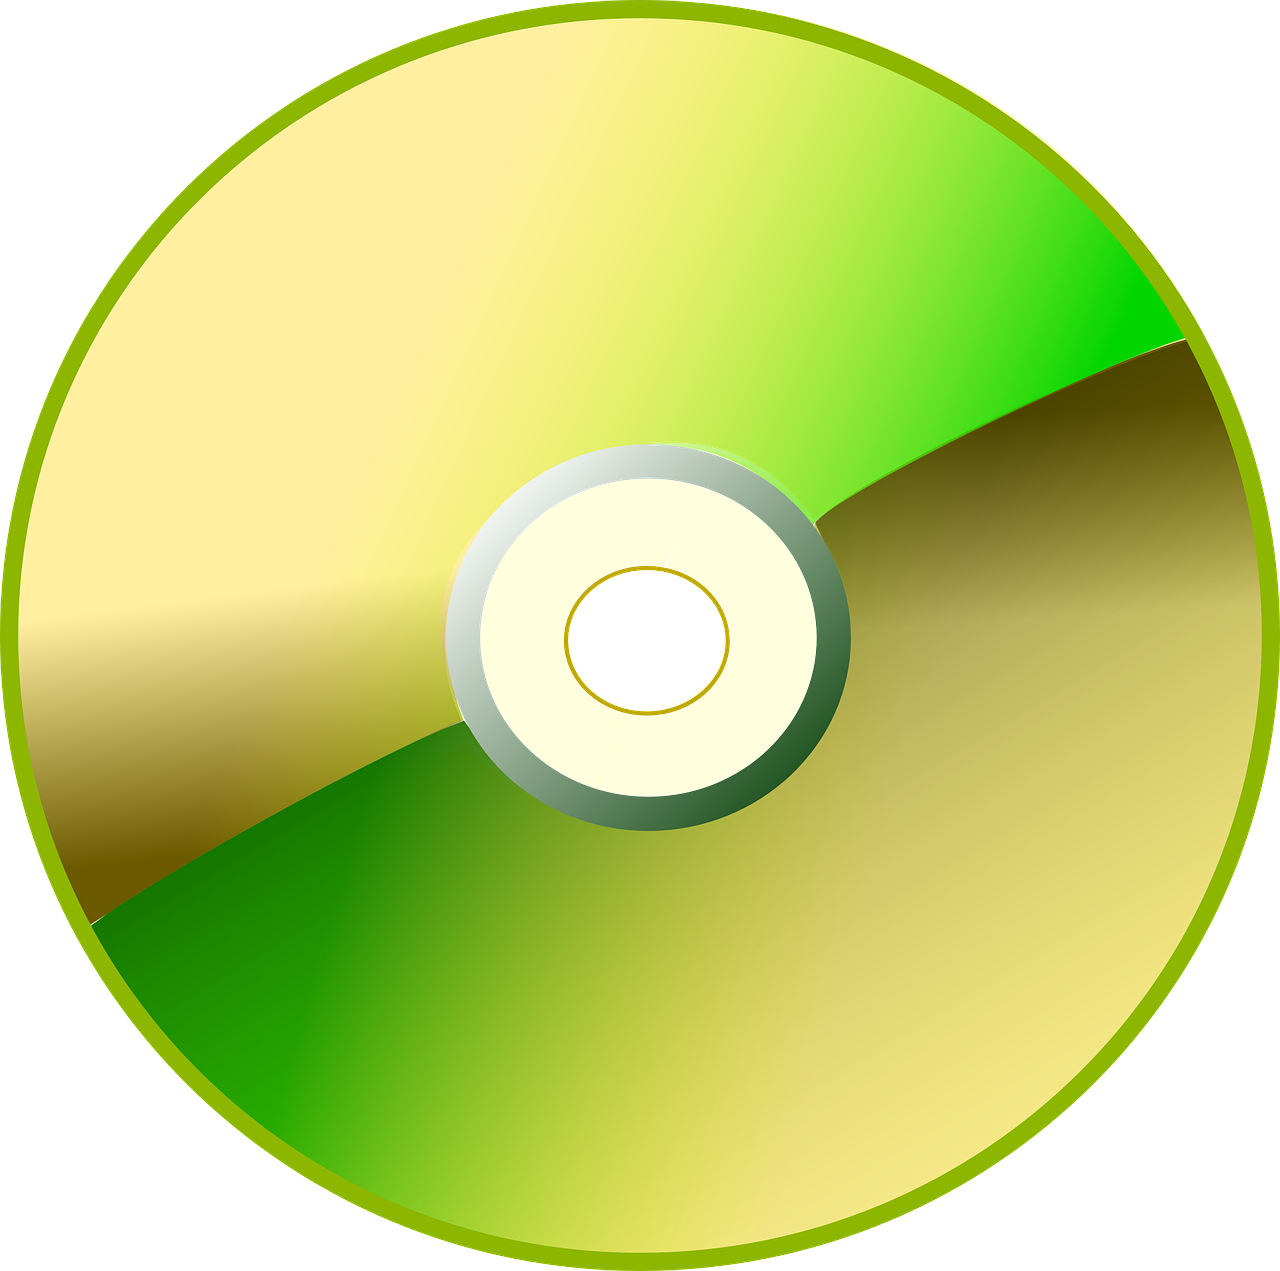 Cd, Diskas, Kompaktinis Diskas, Dvd, Diskas, Cd-Rom, Cd-R, Programinė Įranga, Duomenys, Video